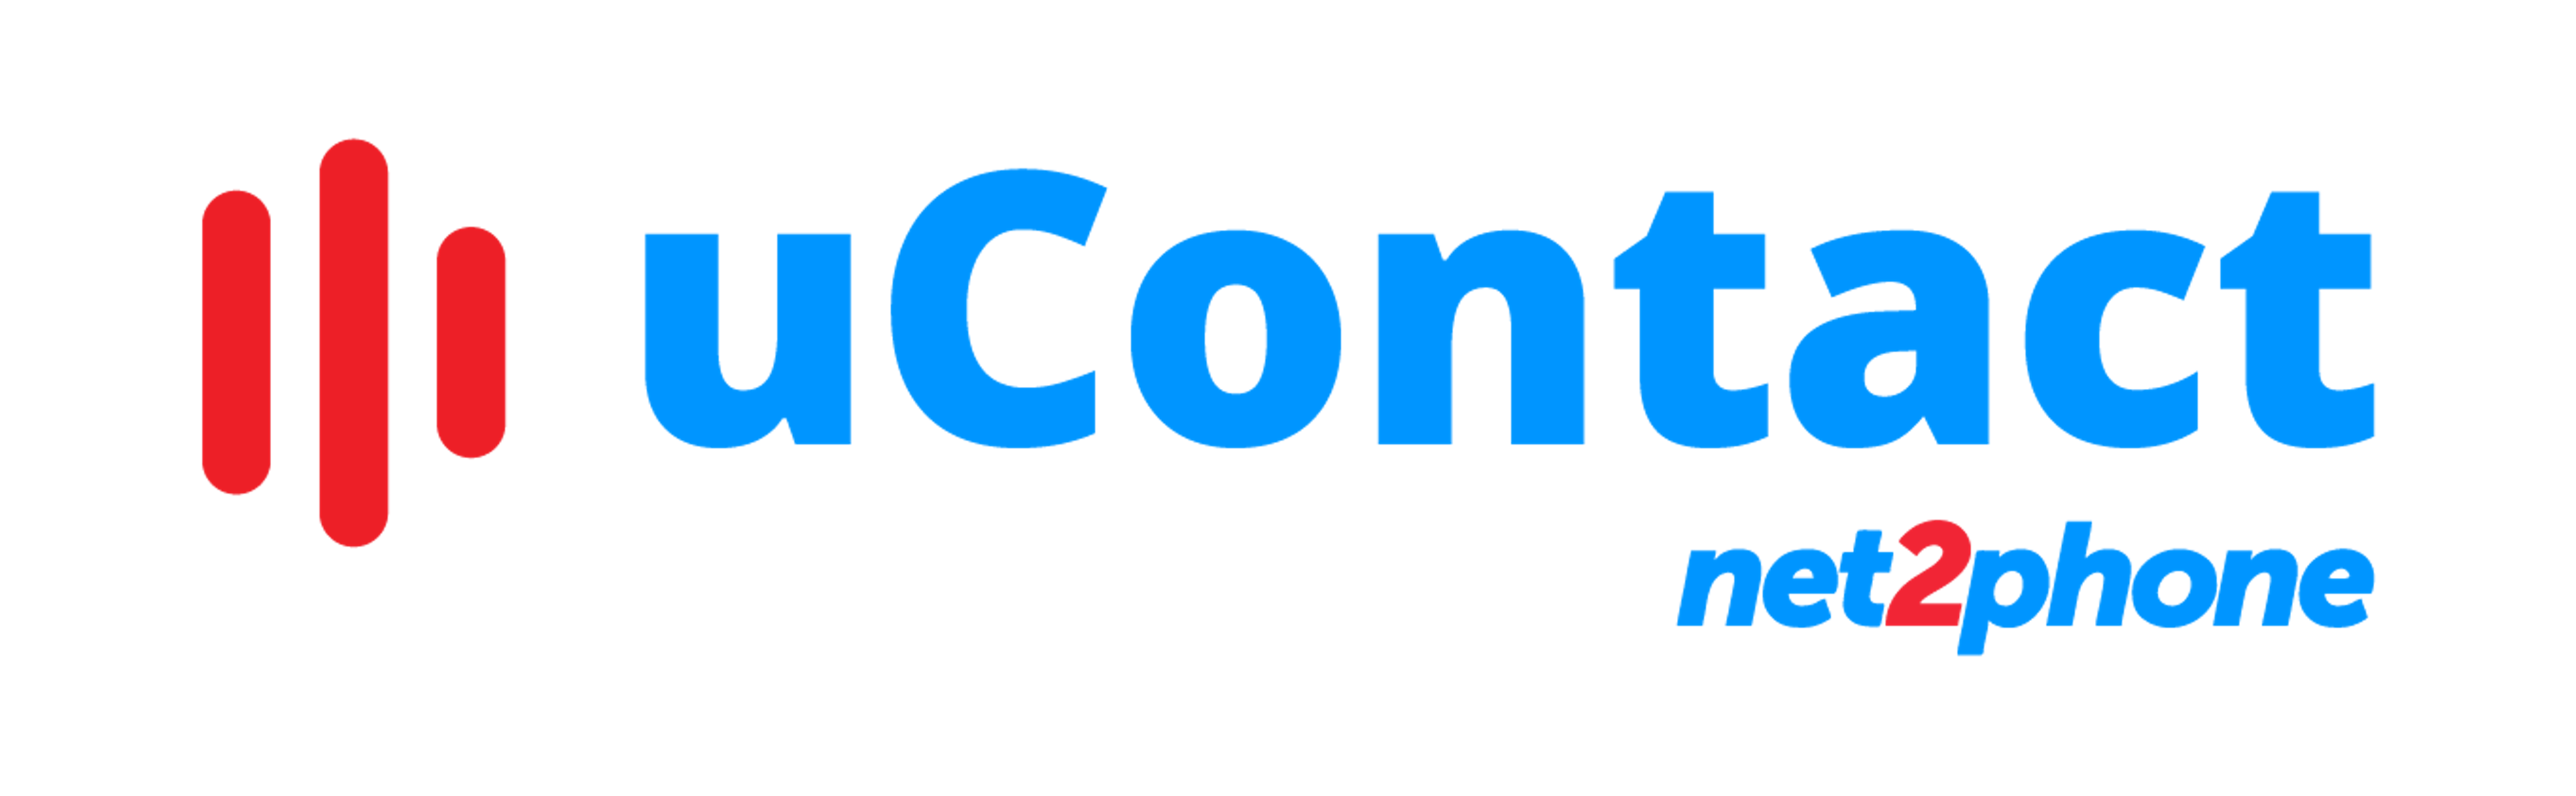 uContact Logo